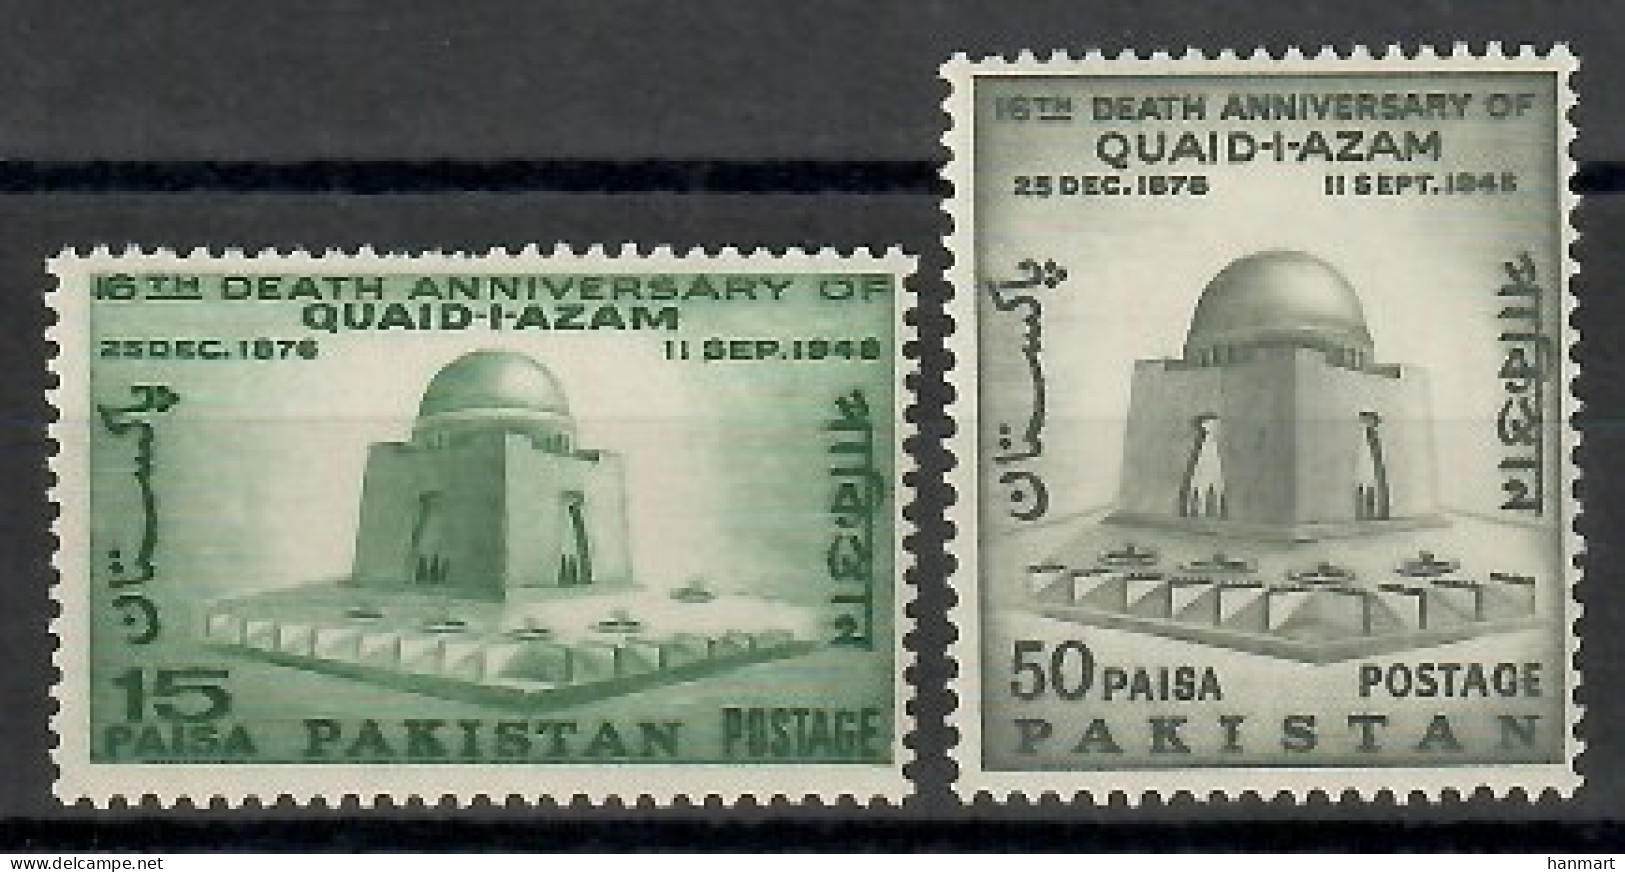 Pakistan 1964 Mi 211-212 MNH  (ZS8 PKS211-212) - Skulpturen